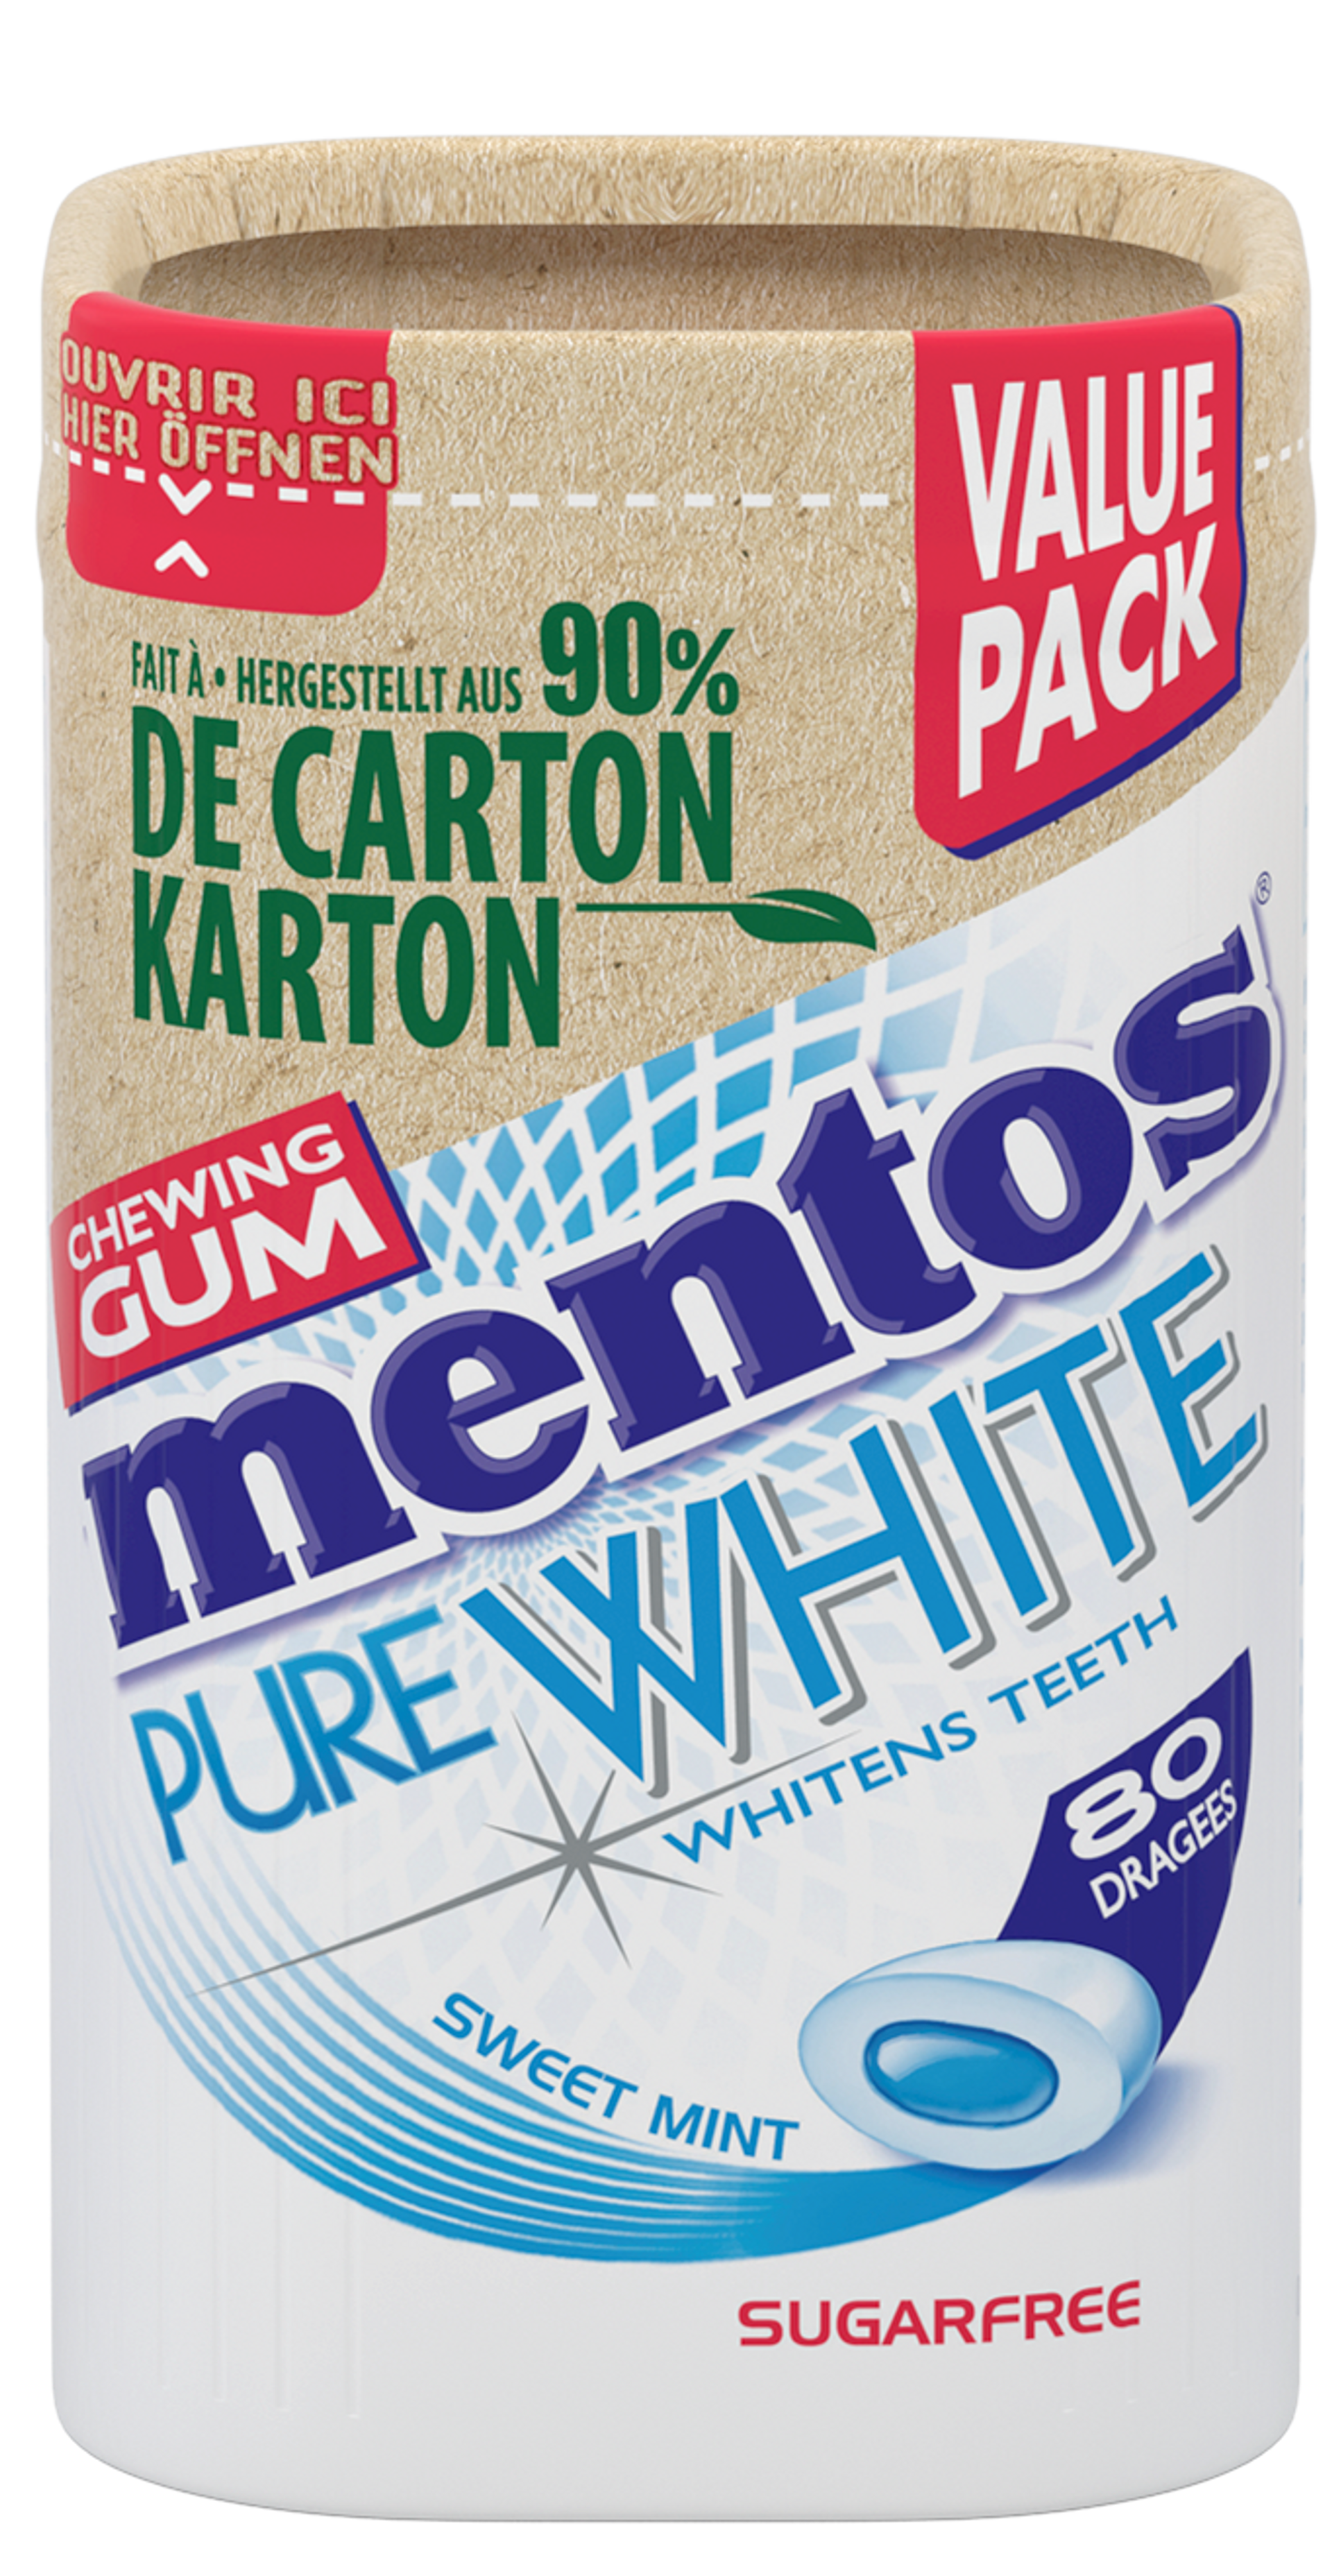 MENTOS GUM PURE WHITE SWEETMINT KARTON BOTTLE